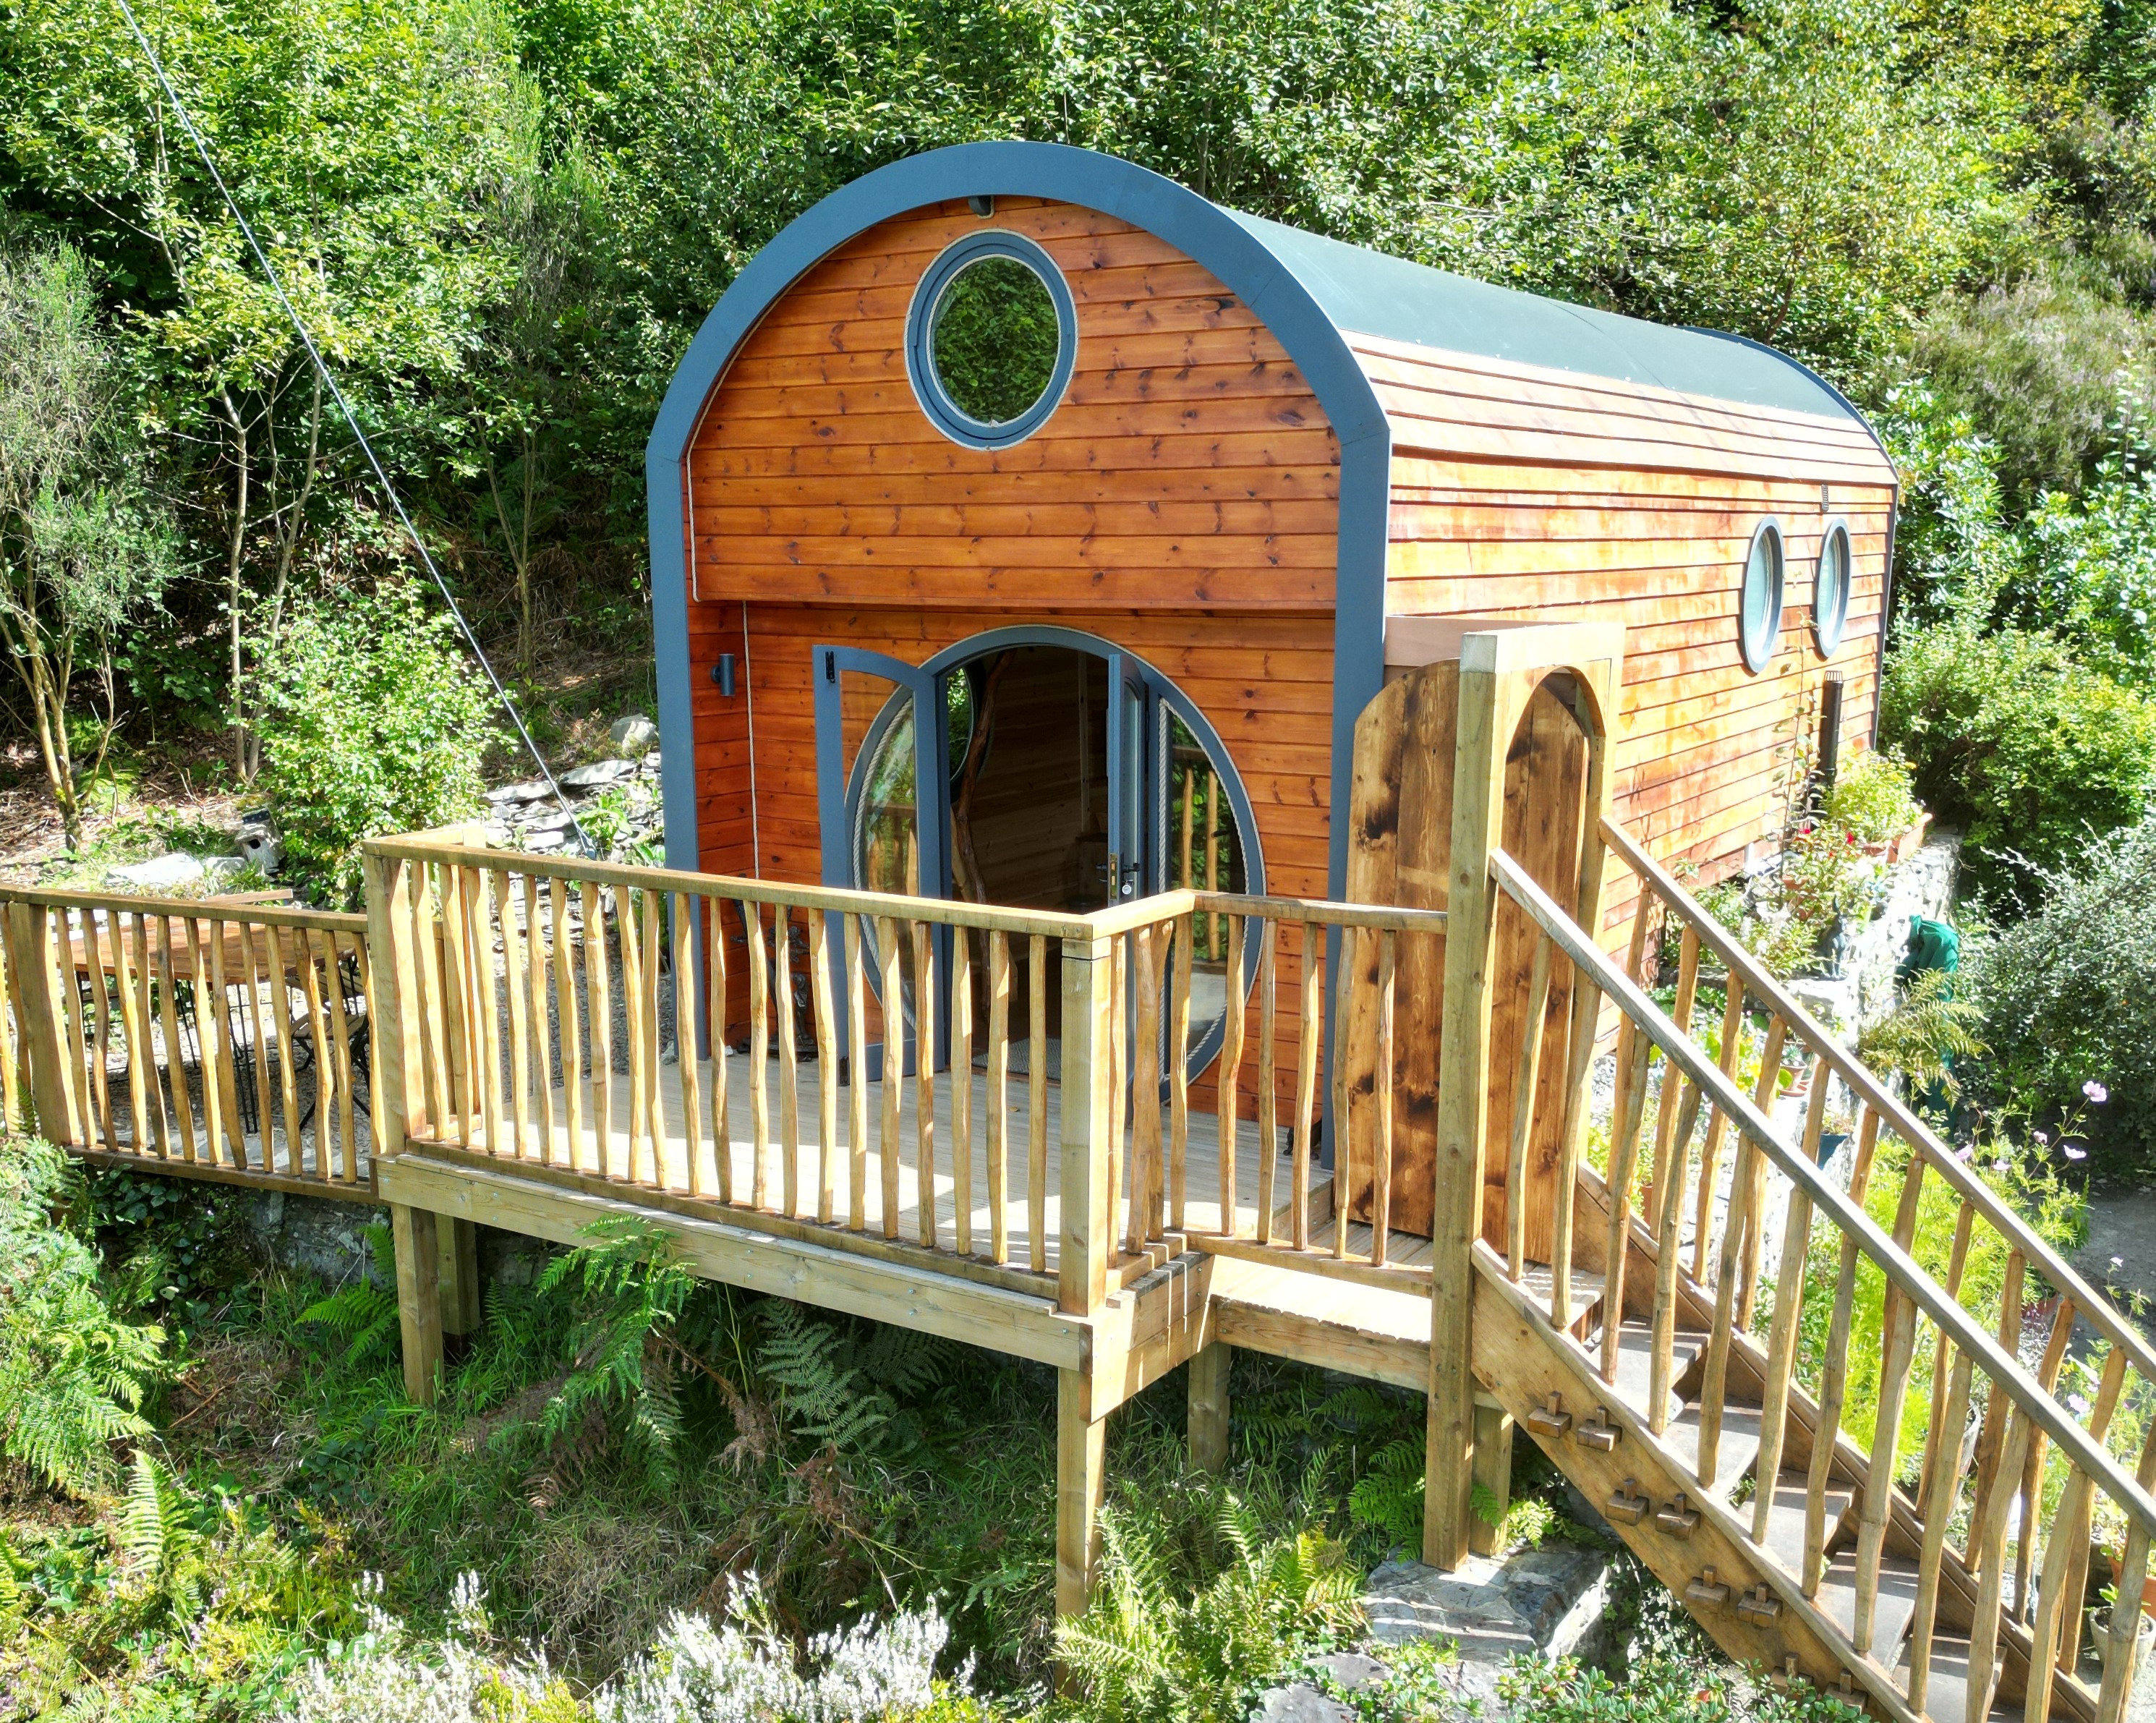 1 bedroom Cottage for rent in Pontrhydfendigaid